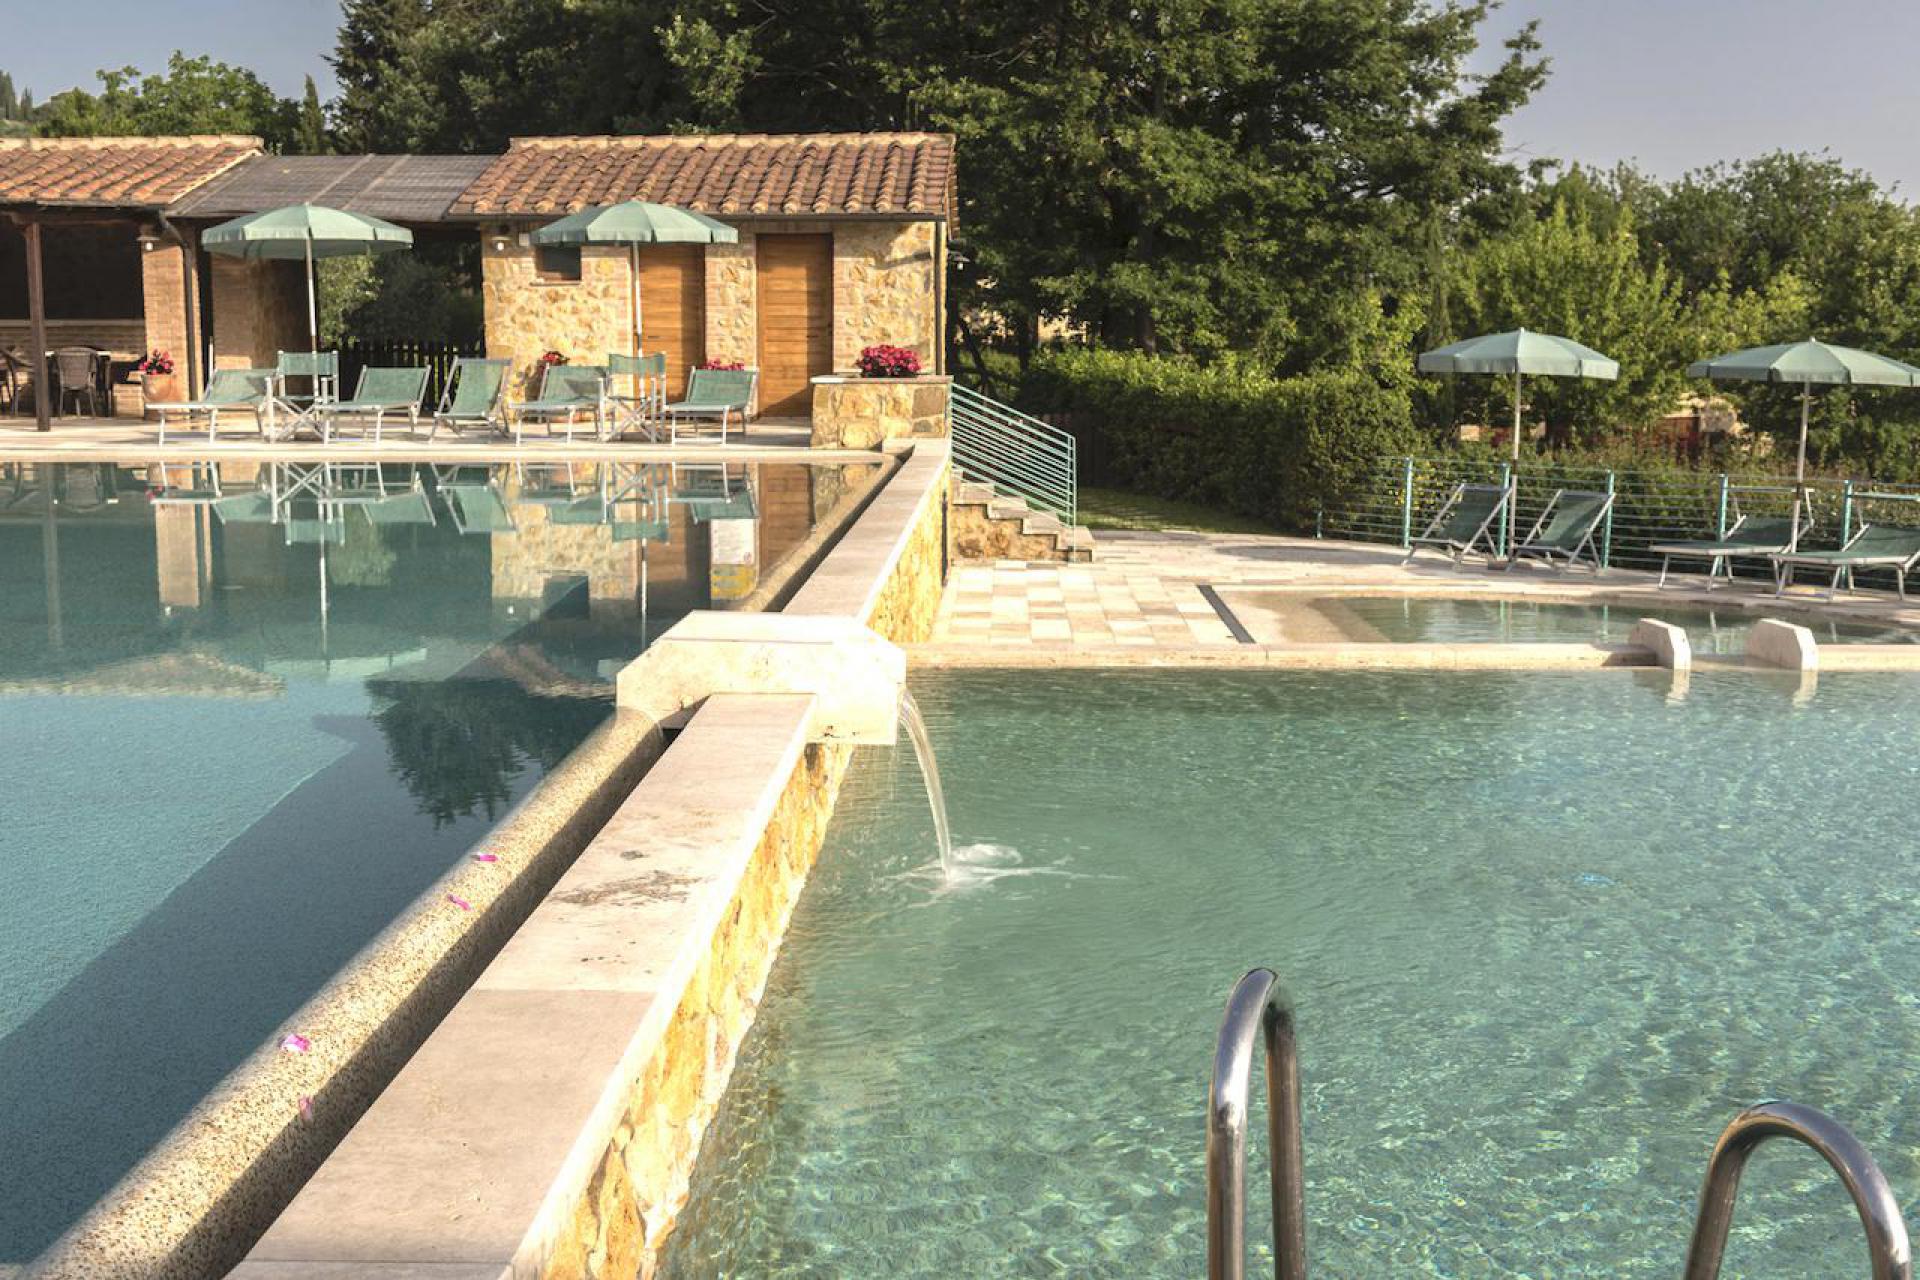 Agriturismo Toscane Kindvriendelijk resort Toscane met geweldig zwembad | myitaly.nl